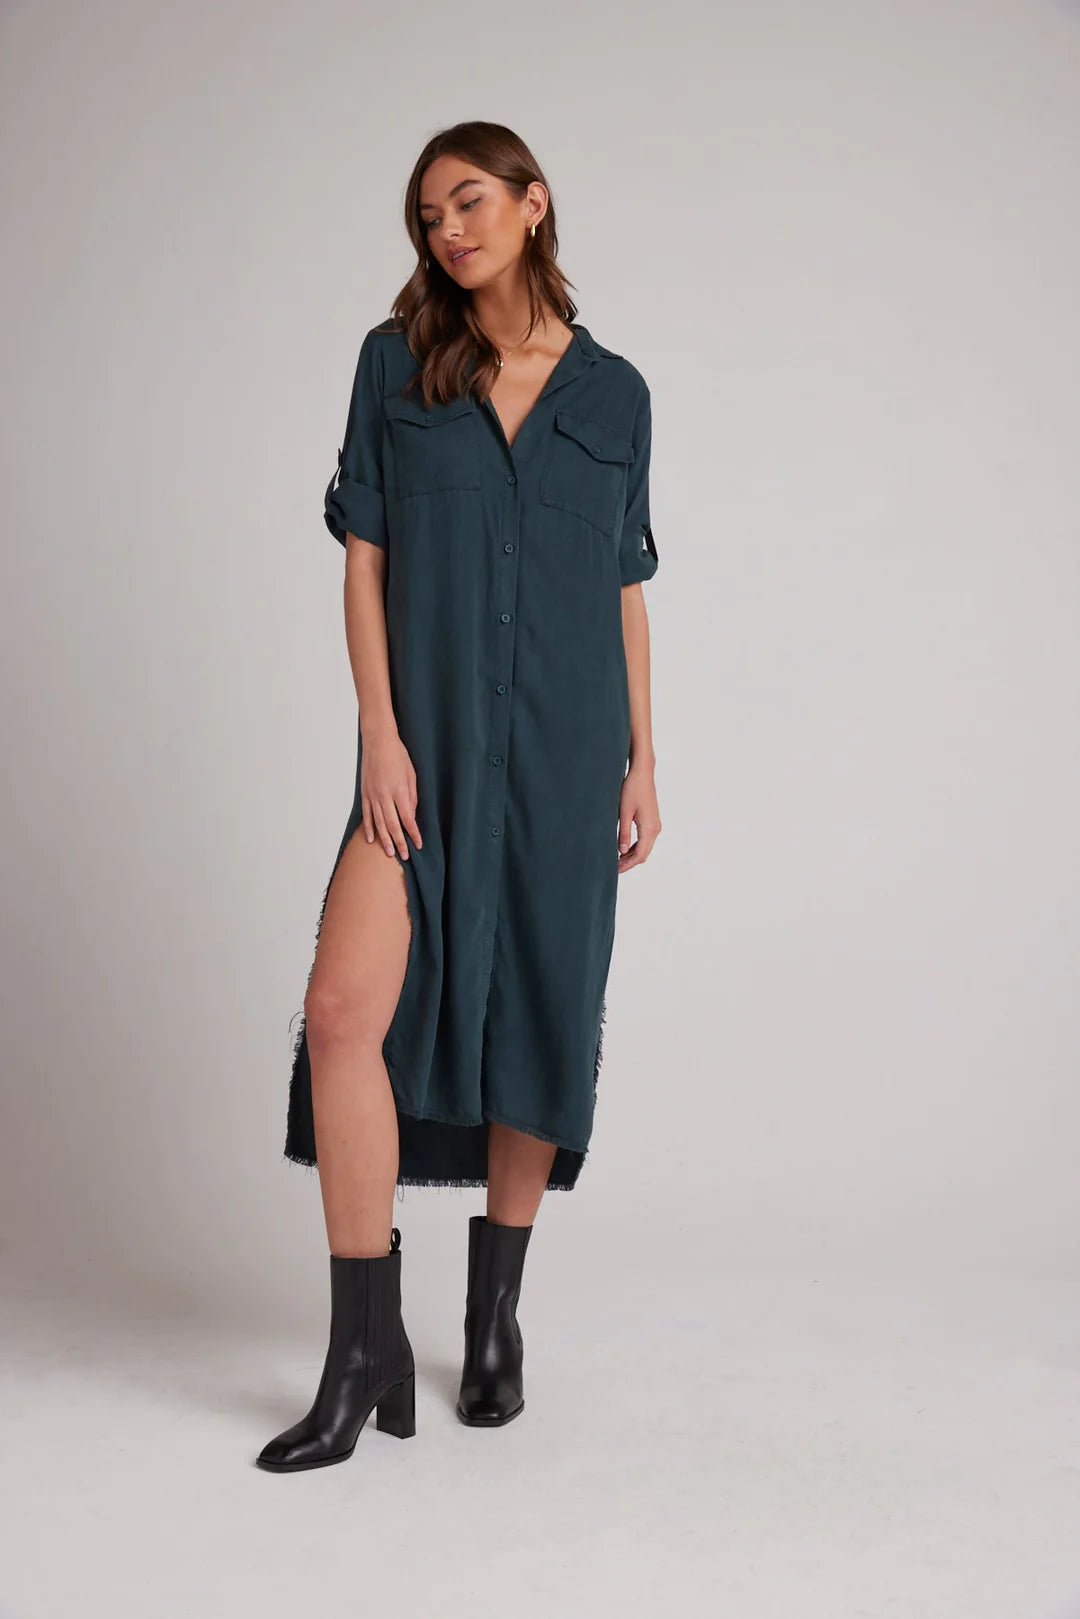 Womens Plus Size Denim Maxi Dress Belted Roll Up Sleeve Long Shirt Dress